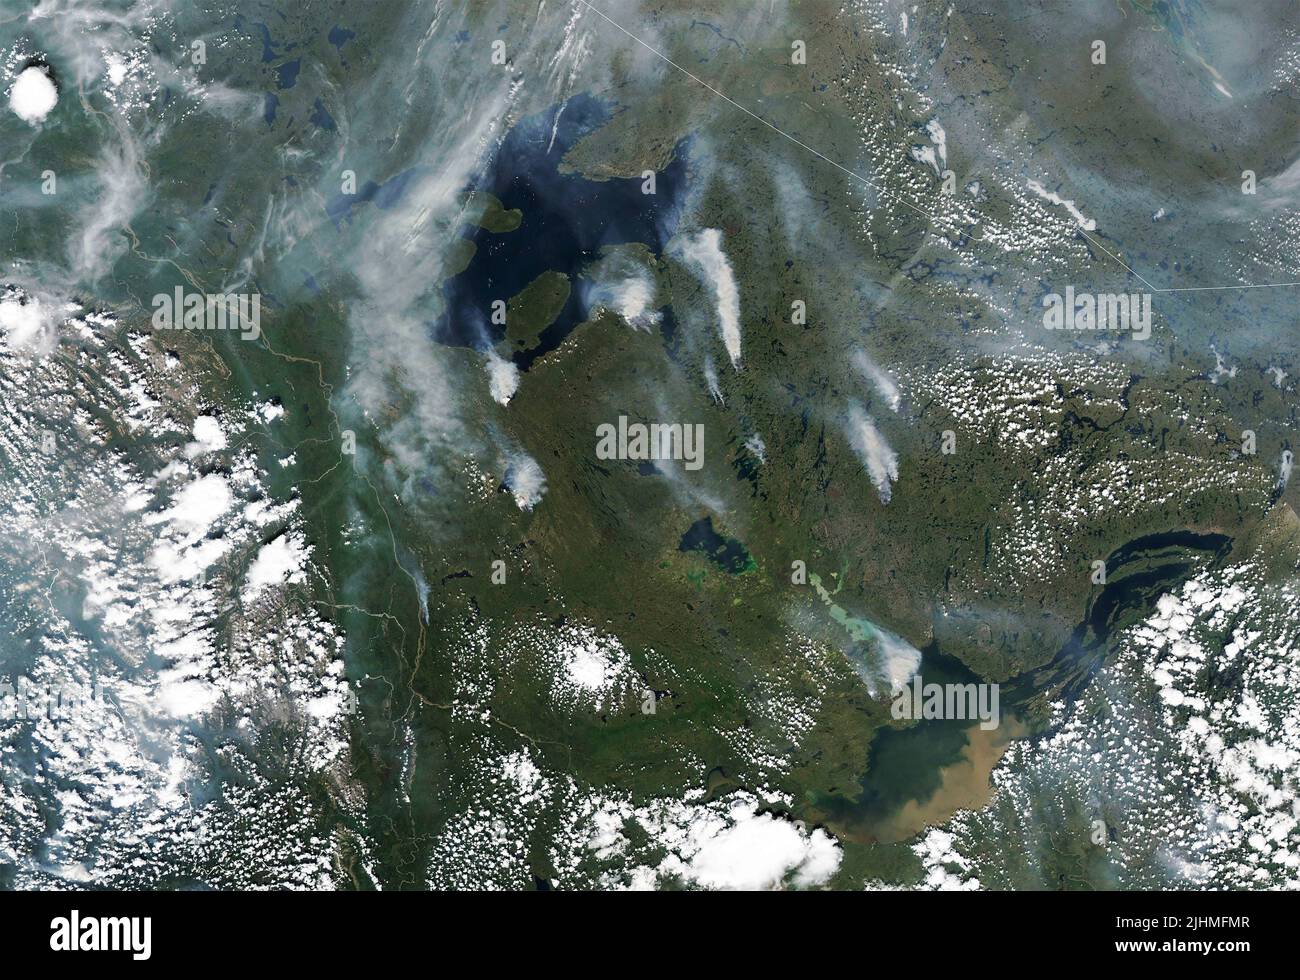 Imagen de satélite que muestra humo de incendios forestales que se queman en los Territorios del Yukón y el Noroeste del Canadá, detectada por el satélite Landsat 8 de la NASA, el 6 de julio de 2022, en órbita terrestre. Según el gobierno canadiense, se incendiaron 136 incendios en el Yukón y 65 en los Territorios del Noroeste. Foto de stock